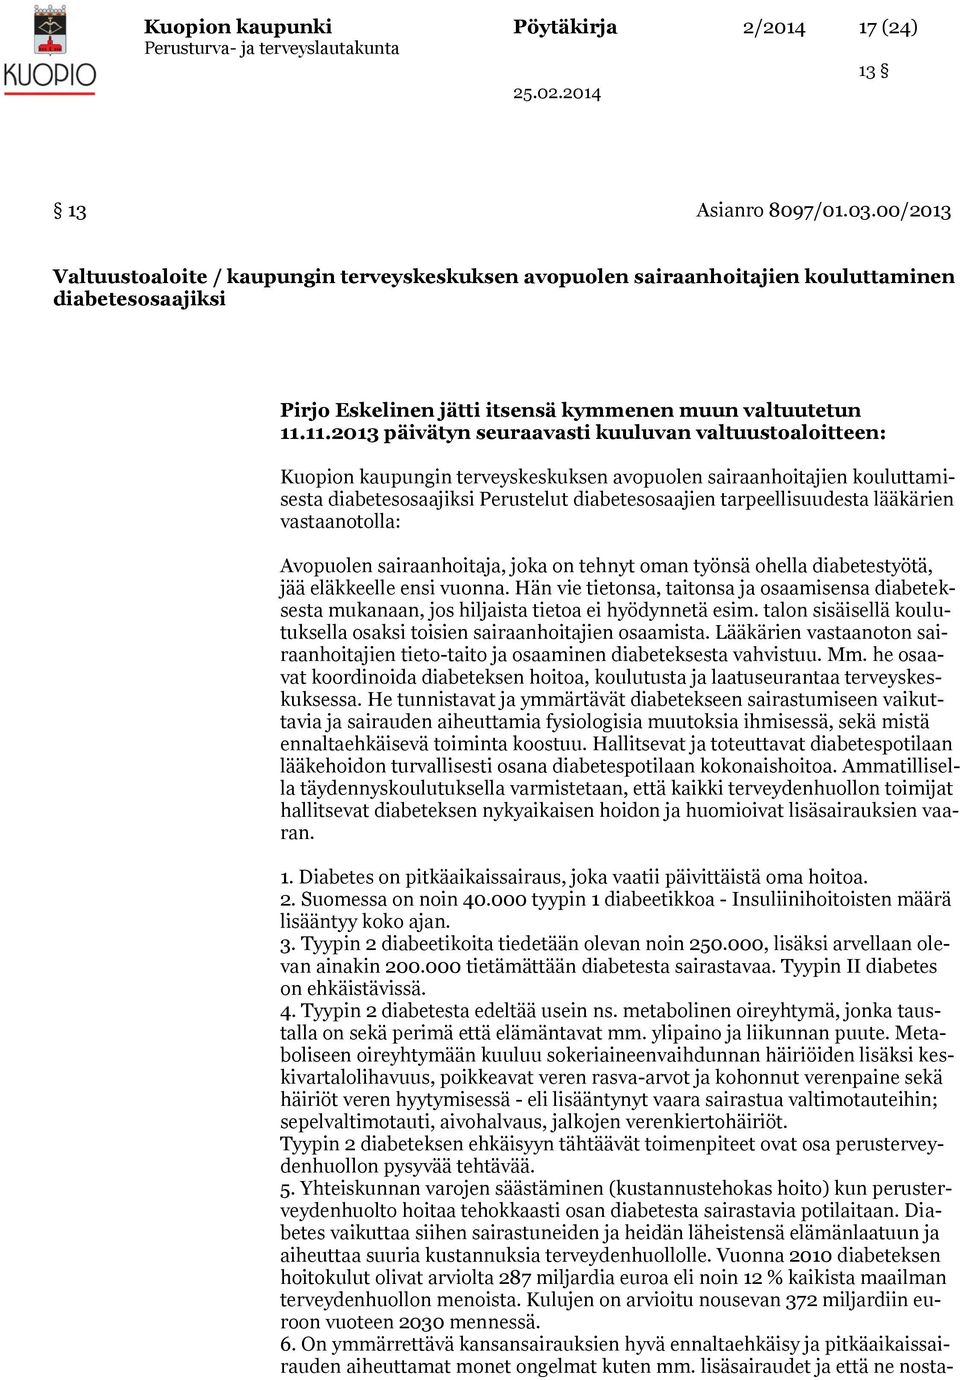 11.2013 päivätyn seuraavasti kuuluvan valtuustoaloitteen: Kuopion kaupungin terveyskeskuksen avopuolen sairaanhoitajien kouluttamisesta diabetesosaajiksi Perustelut diabetesosaajien tarpeellisuudesta